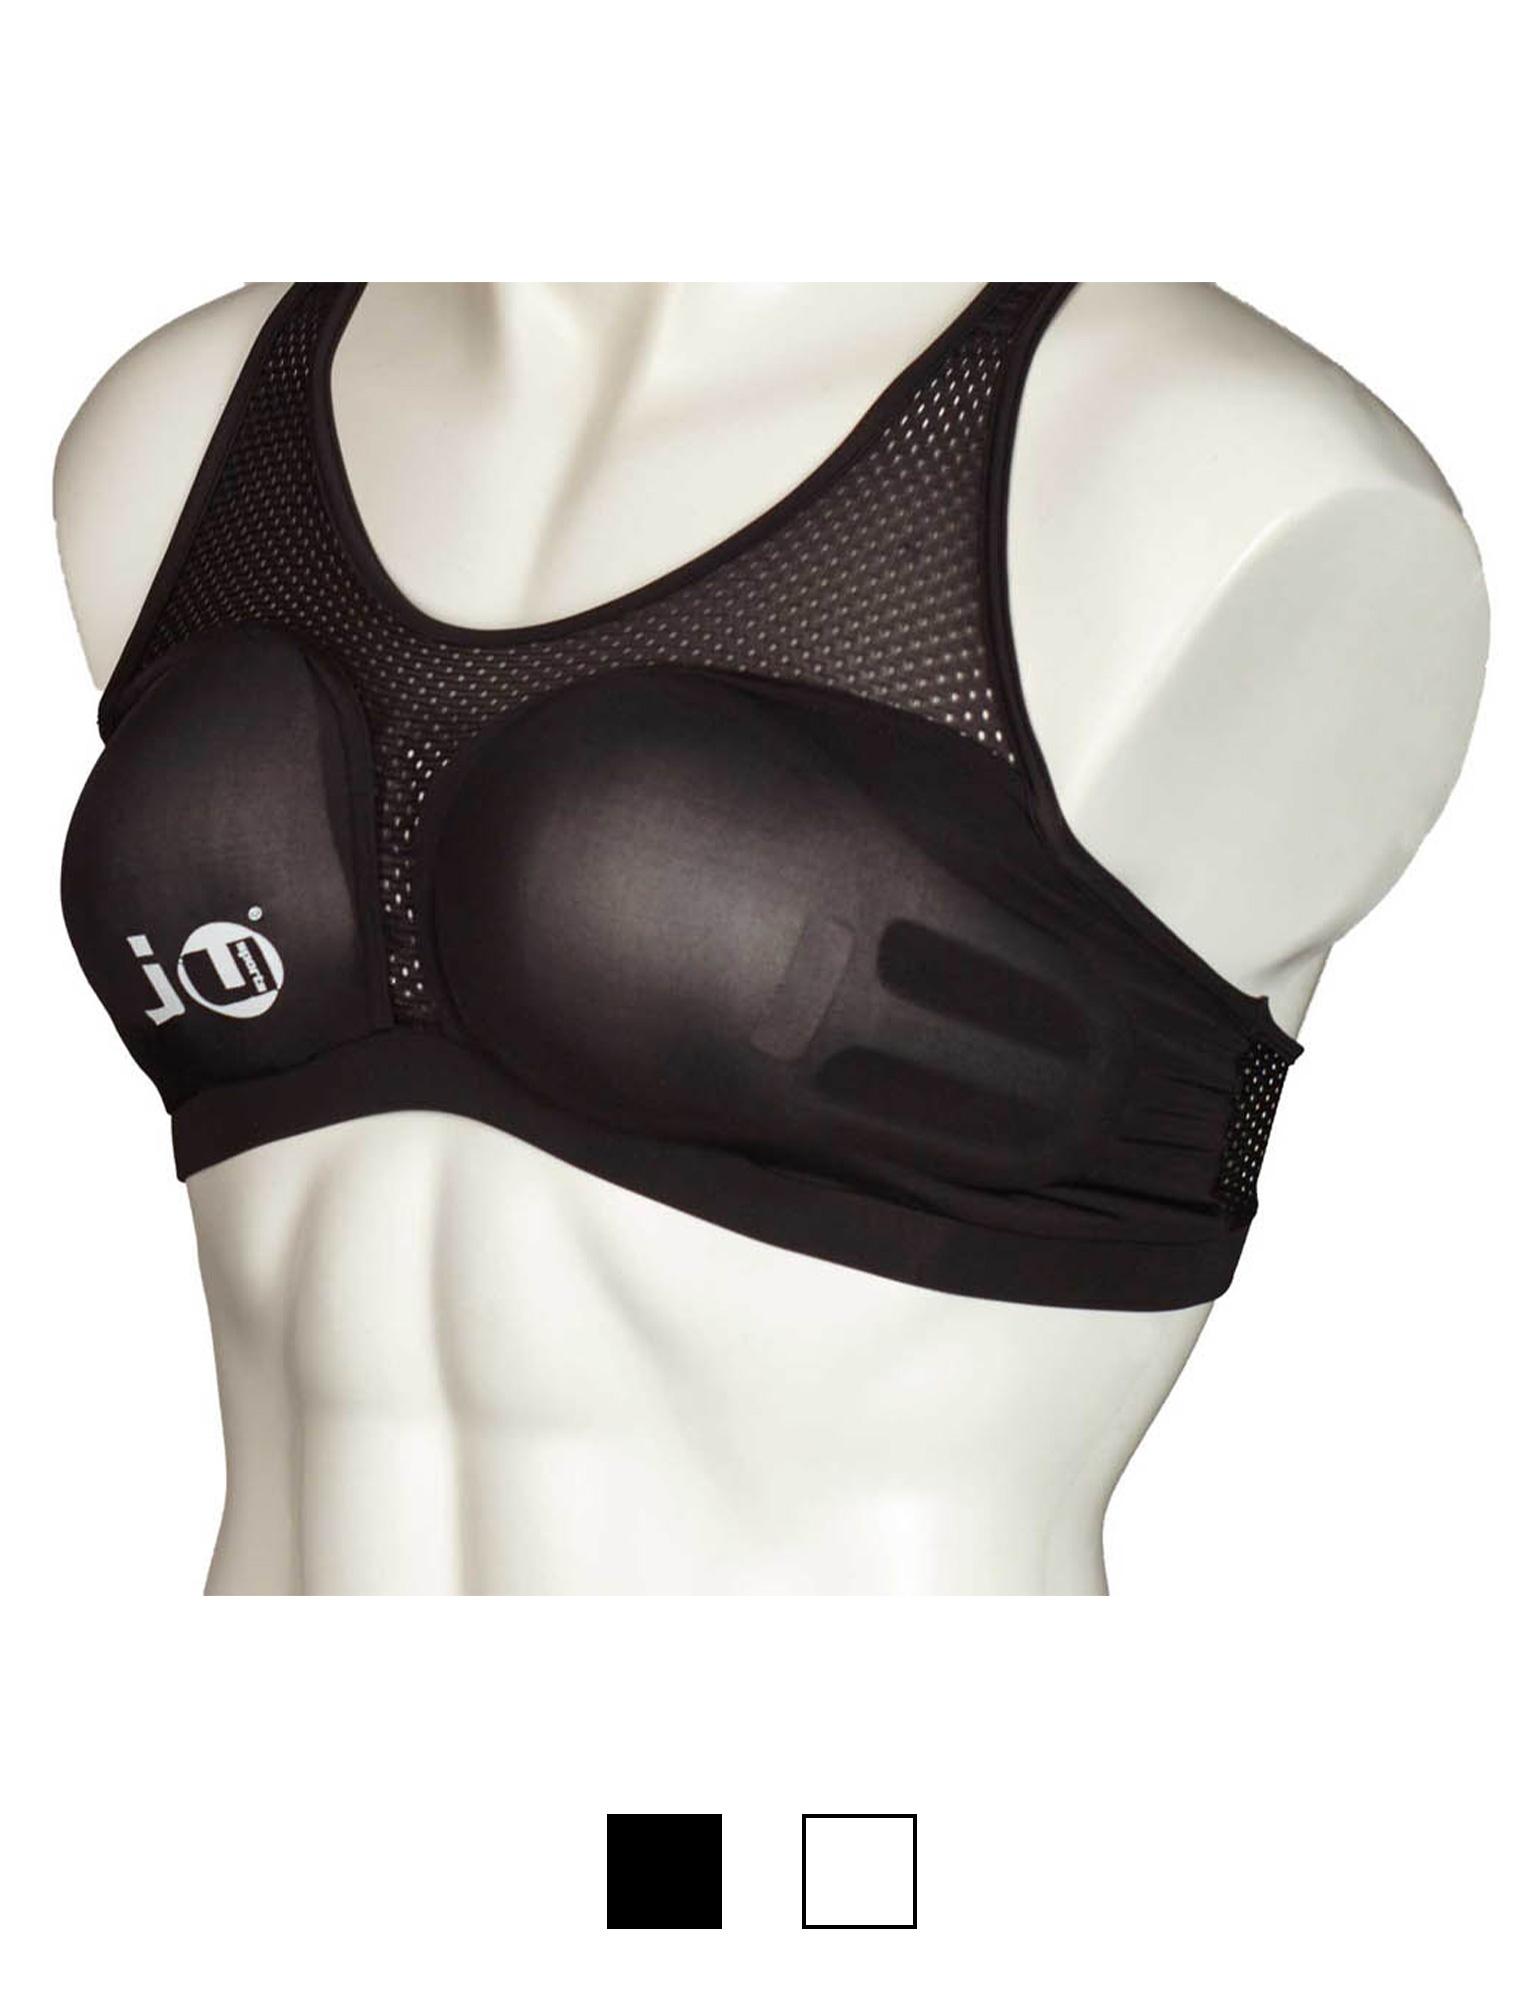 Brustschutz für Damen Cool Guard "Super" komplett schwarz